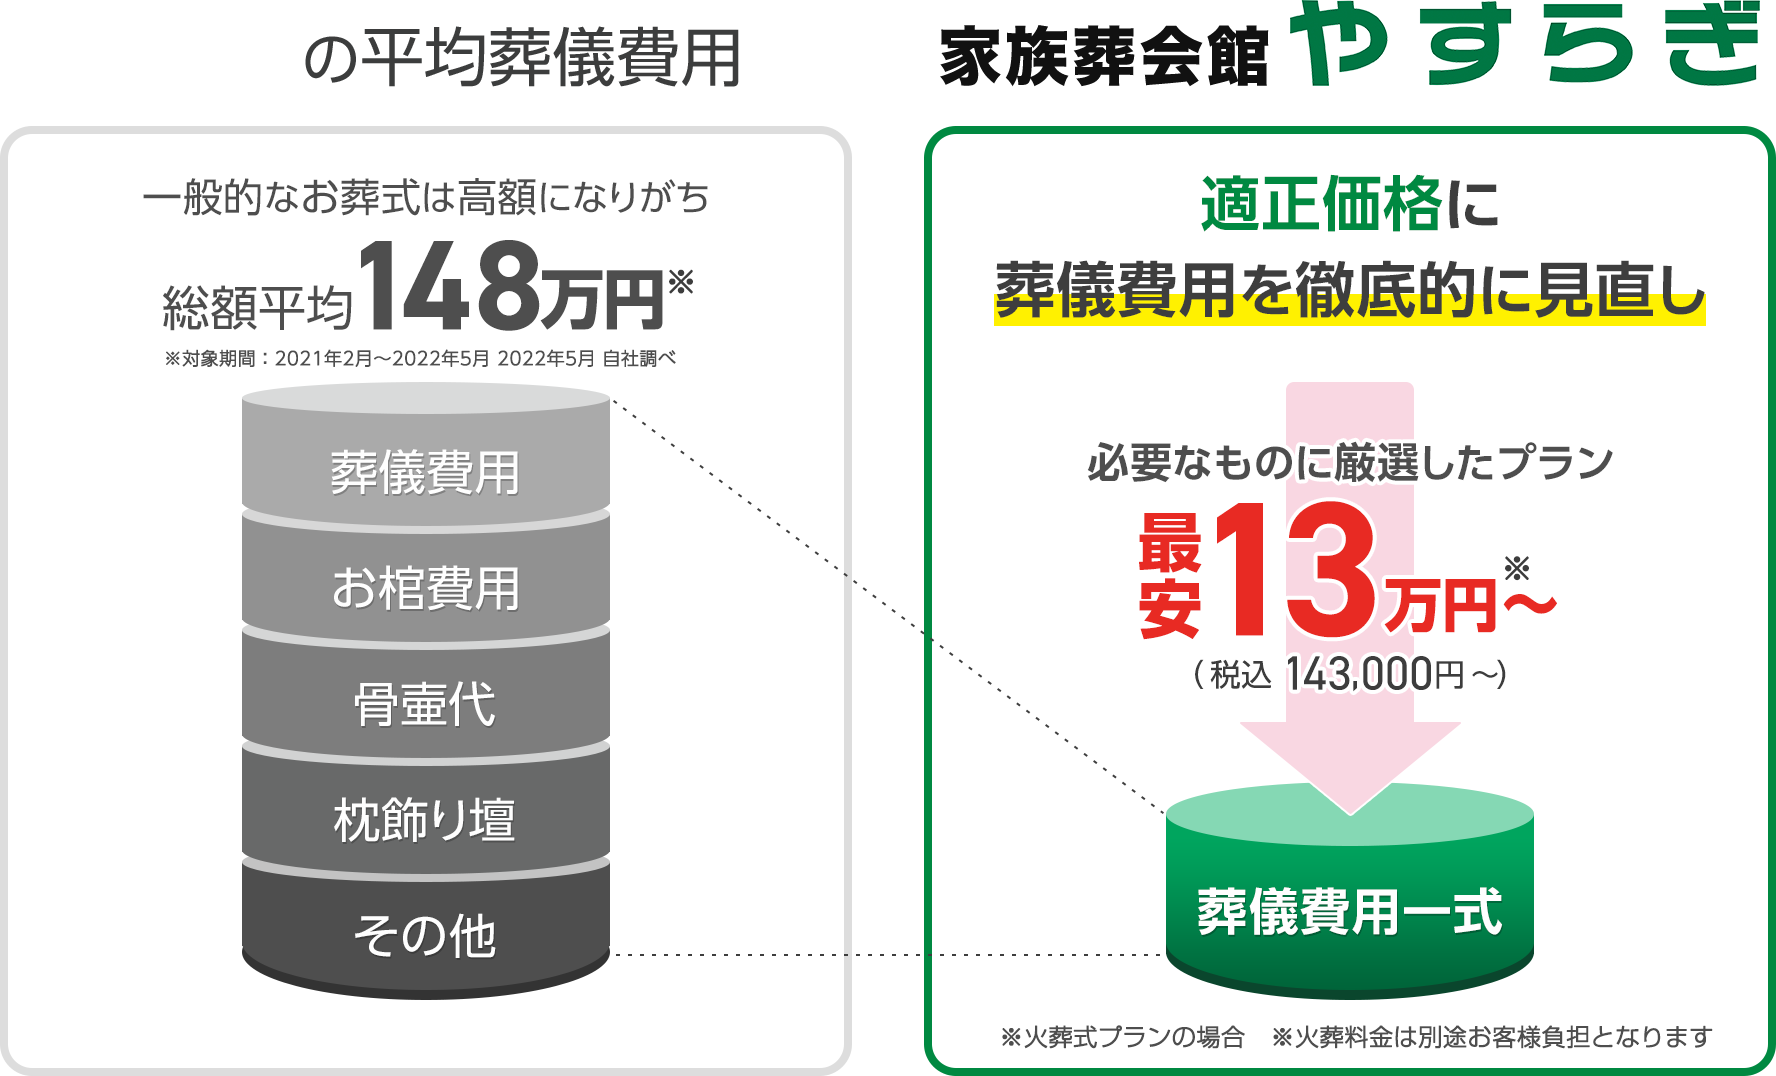 松本・塩尻の平均葬儀費用との比較